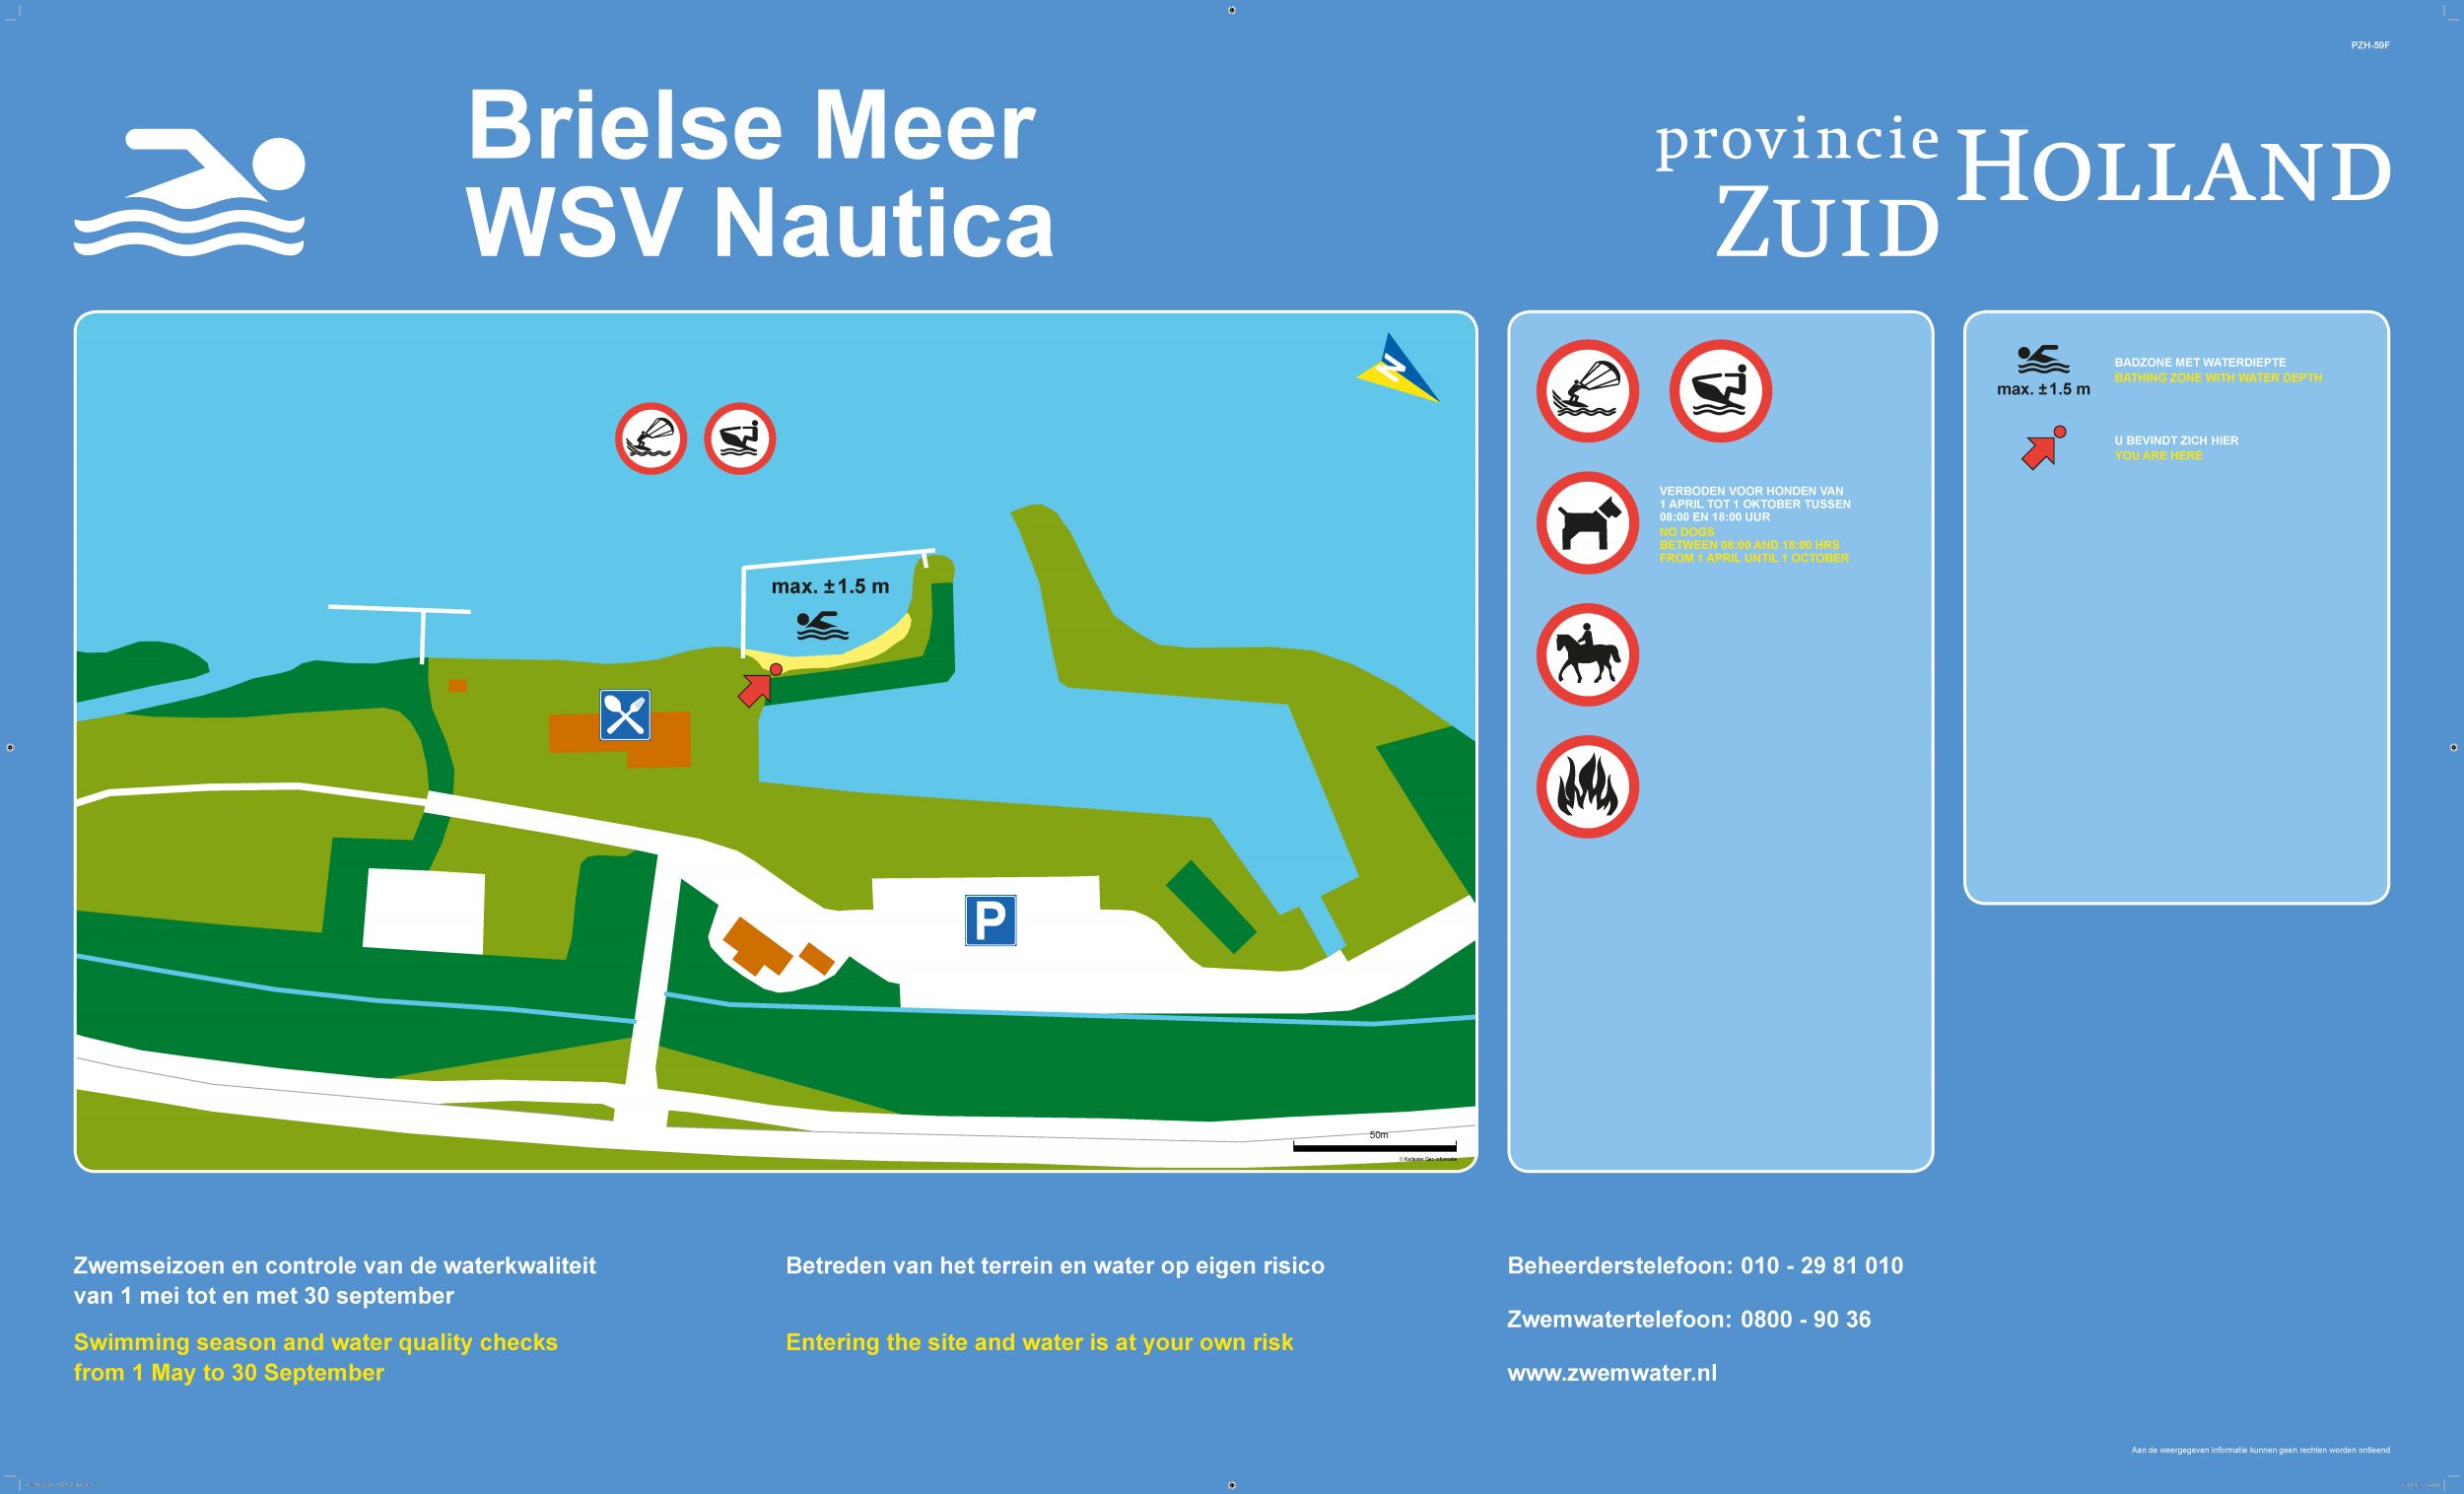 Het informatiebord bij zwemlocatie Brielse Meer WSV Nautica